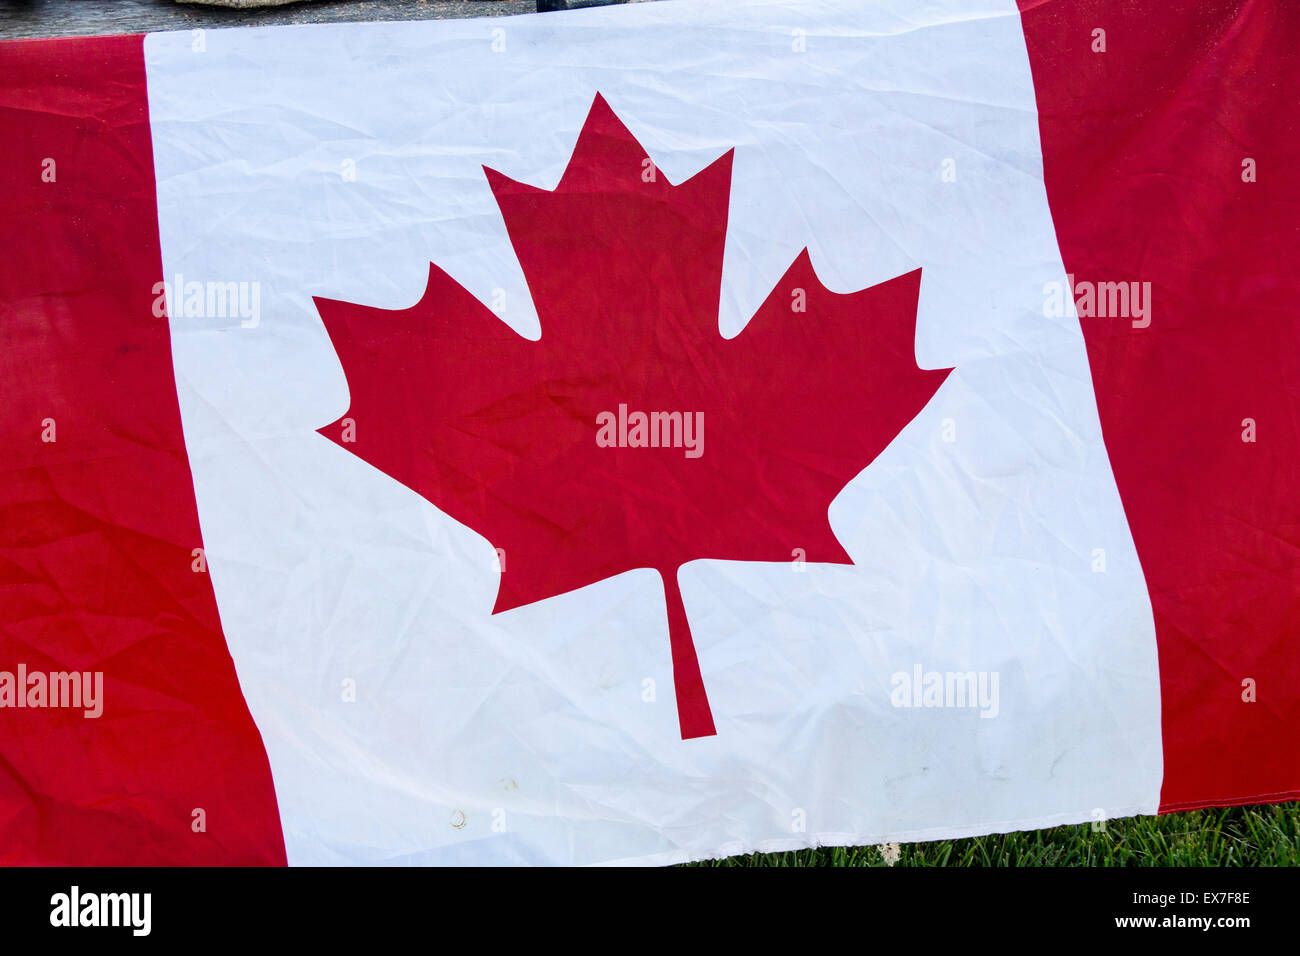 Close up of le rouge et blanc du drapeau canadien à la feuille d'érable au centre. Banque D'Images